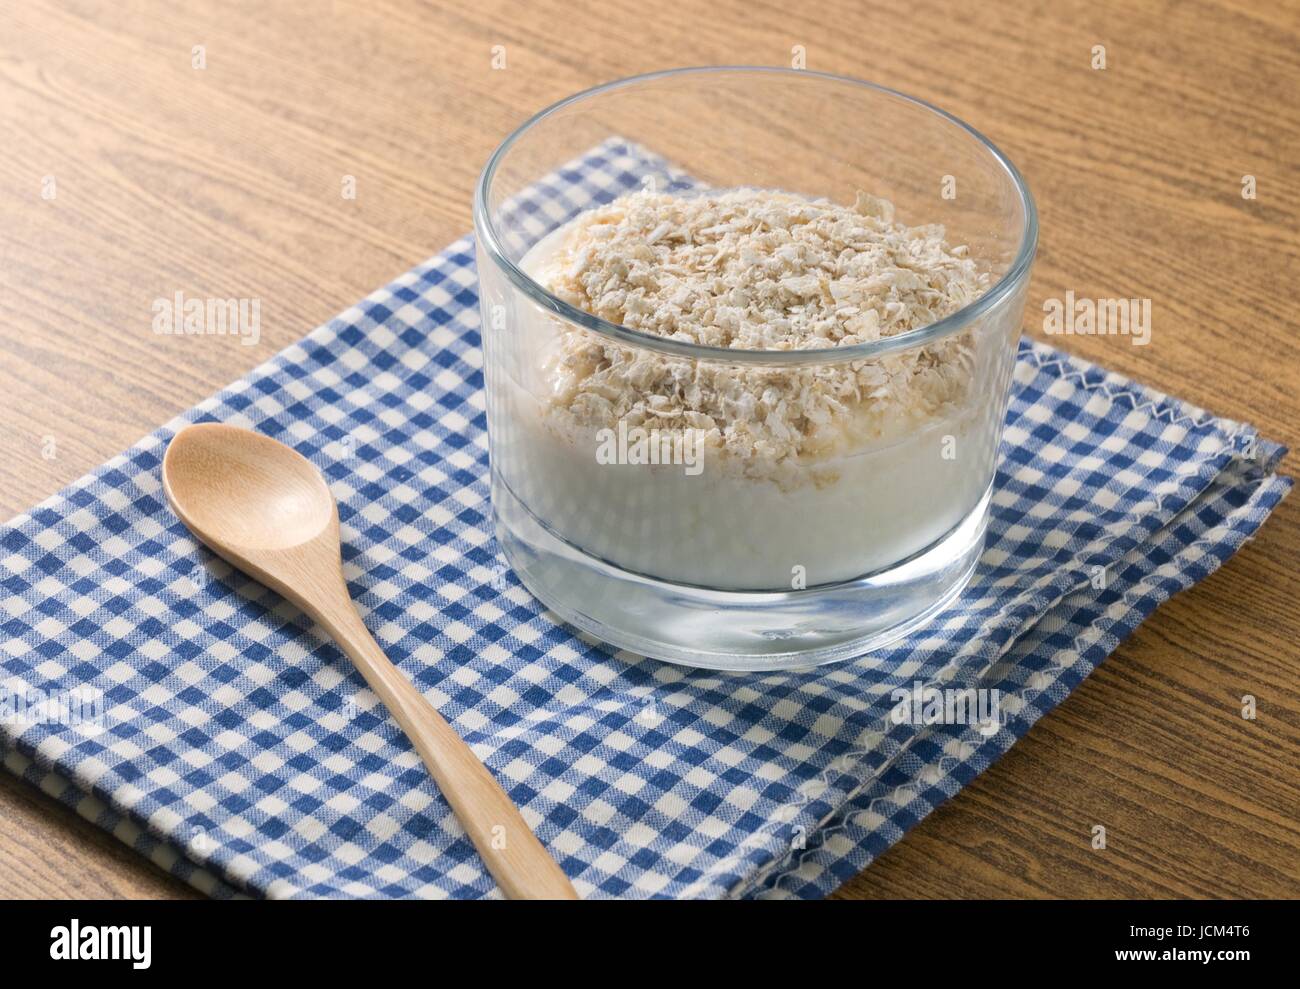 La garniture du yaourt fait maison avec l'Avoine Porridge, du point de vue nutritionnel riche en protéines, calcium, riboflavine, vitamine B6 et vitamine B12. Banque D'Images